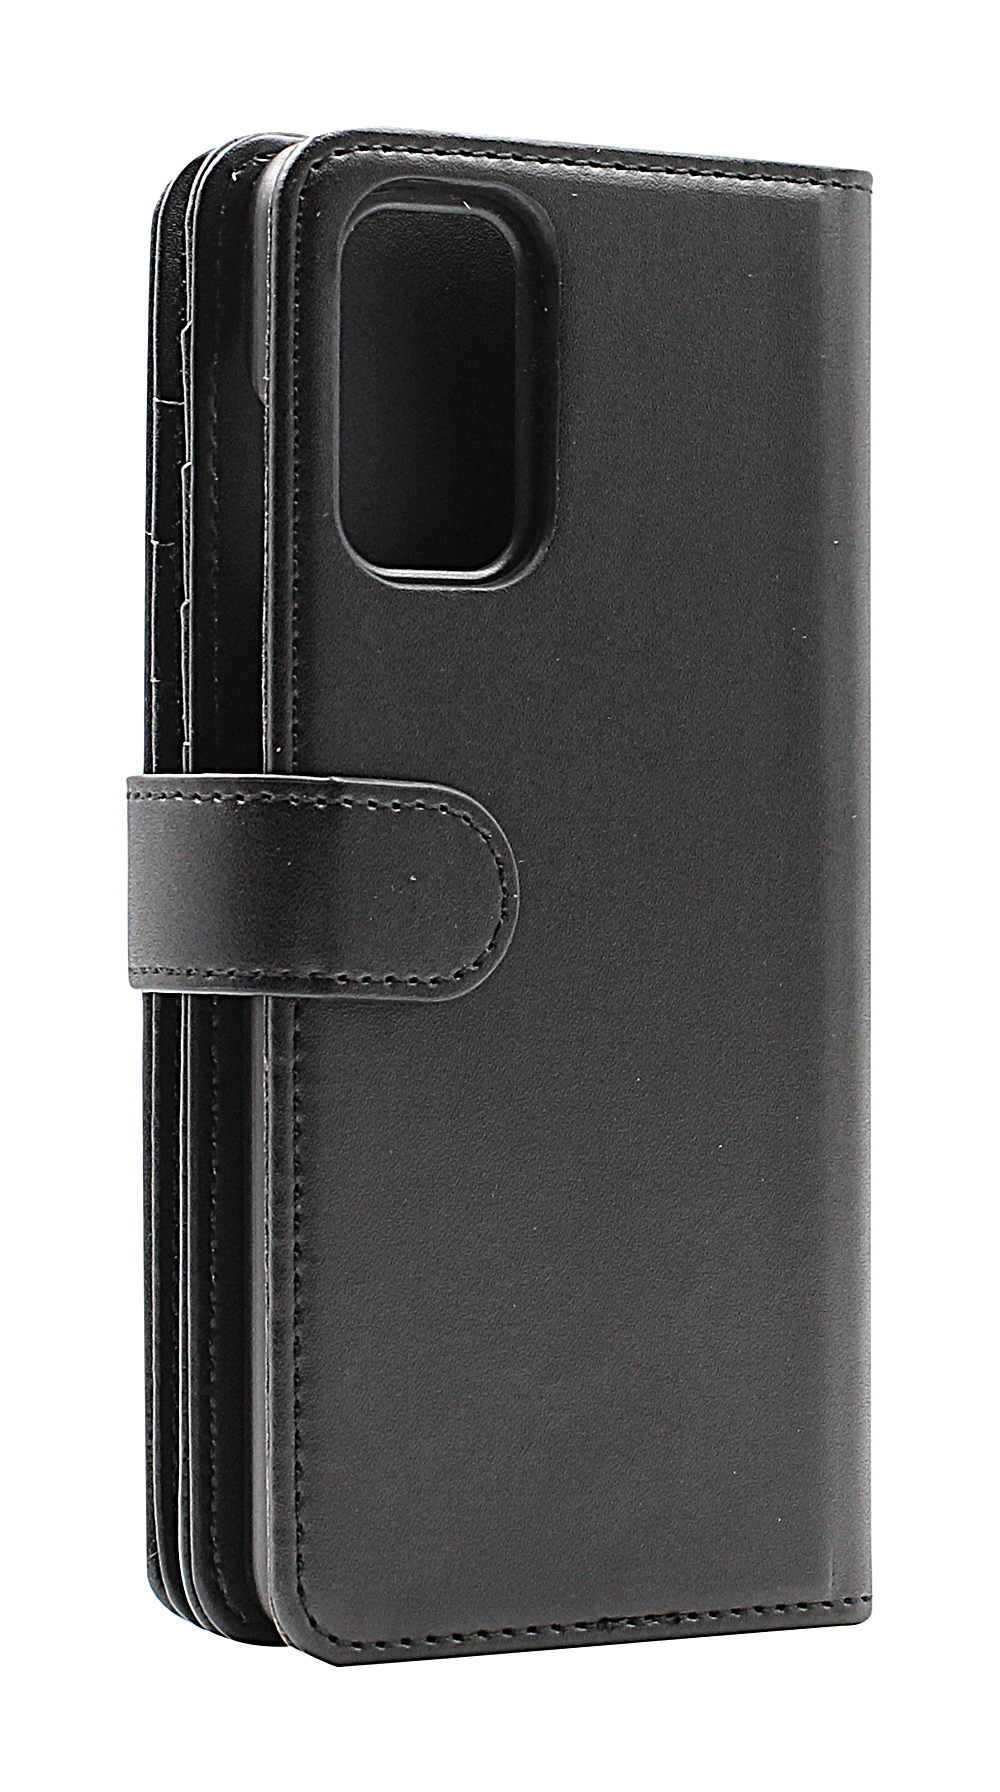 CoverInSkimblocker XL Wallet Samsung Galaxy A32 4G (SM-A325F)